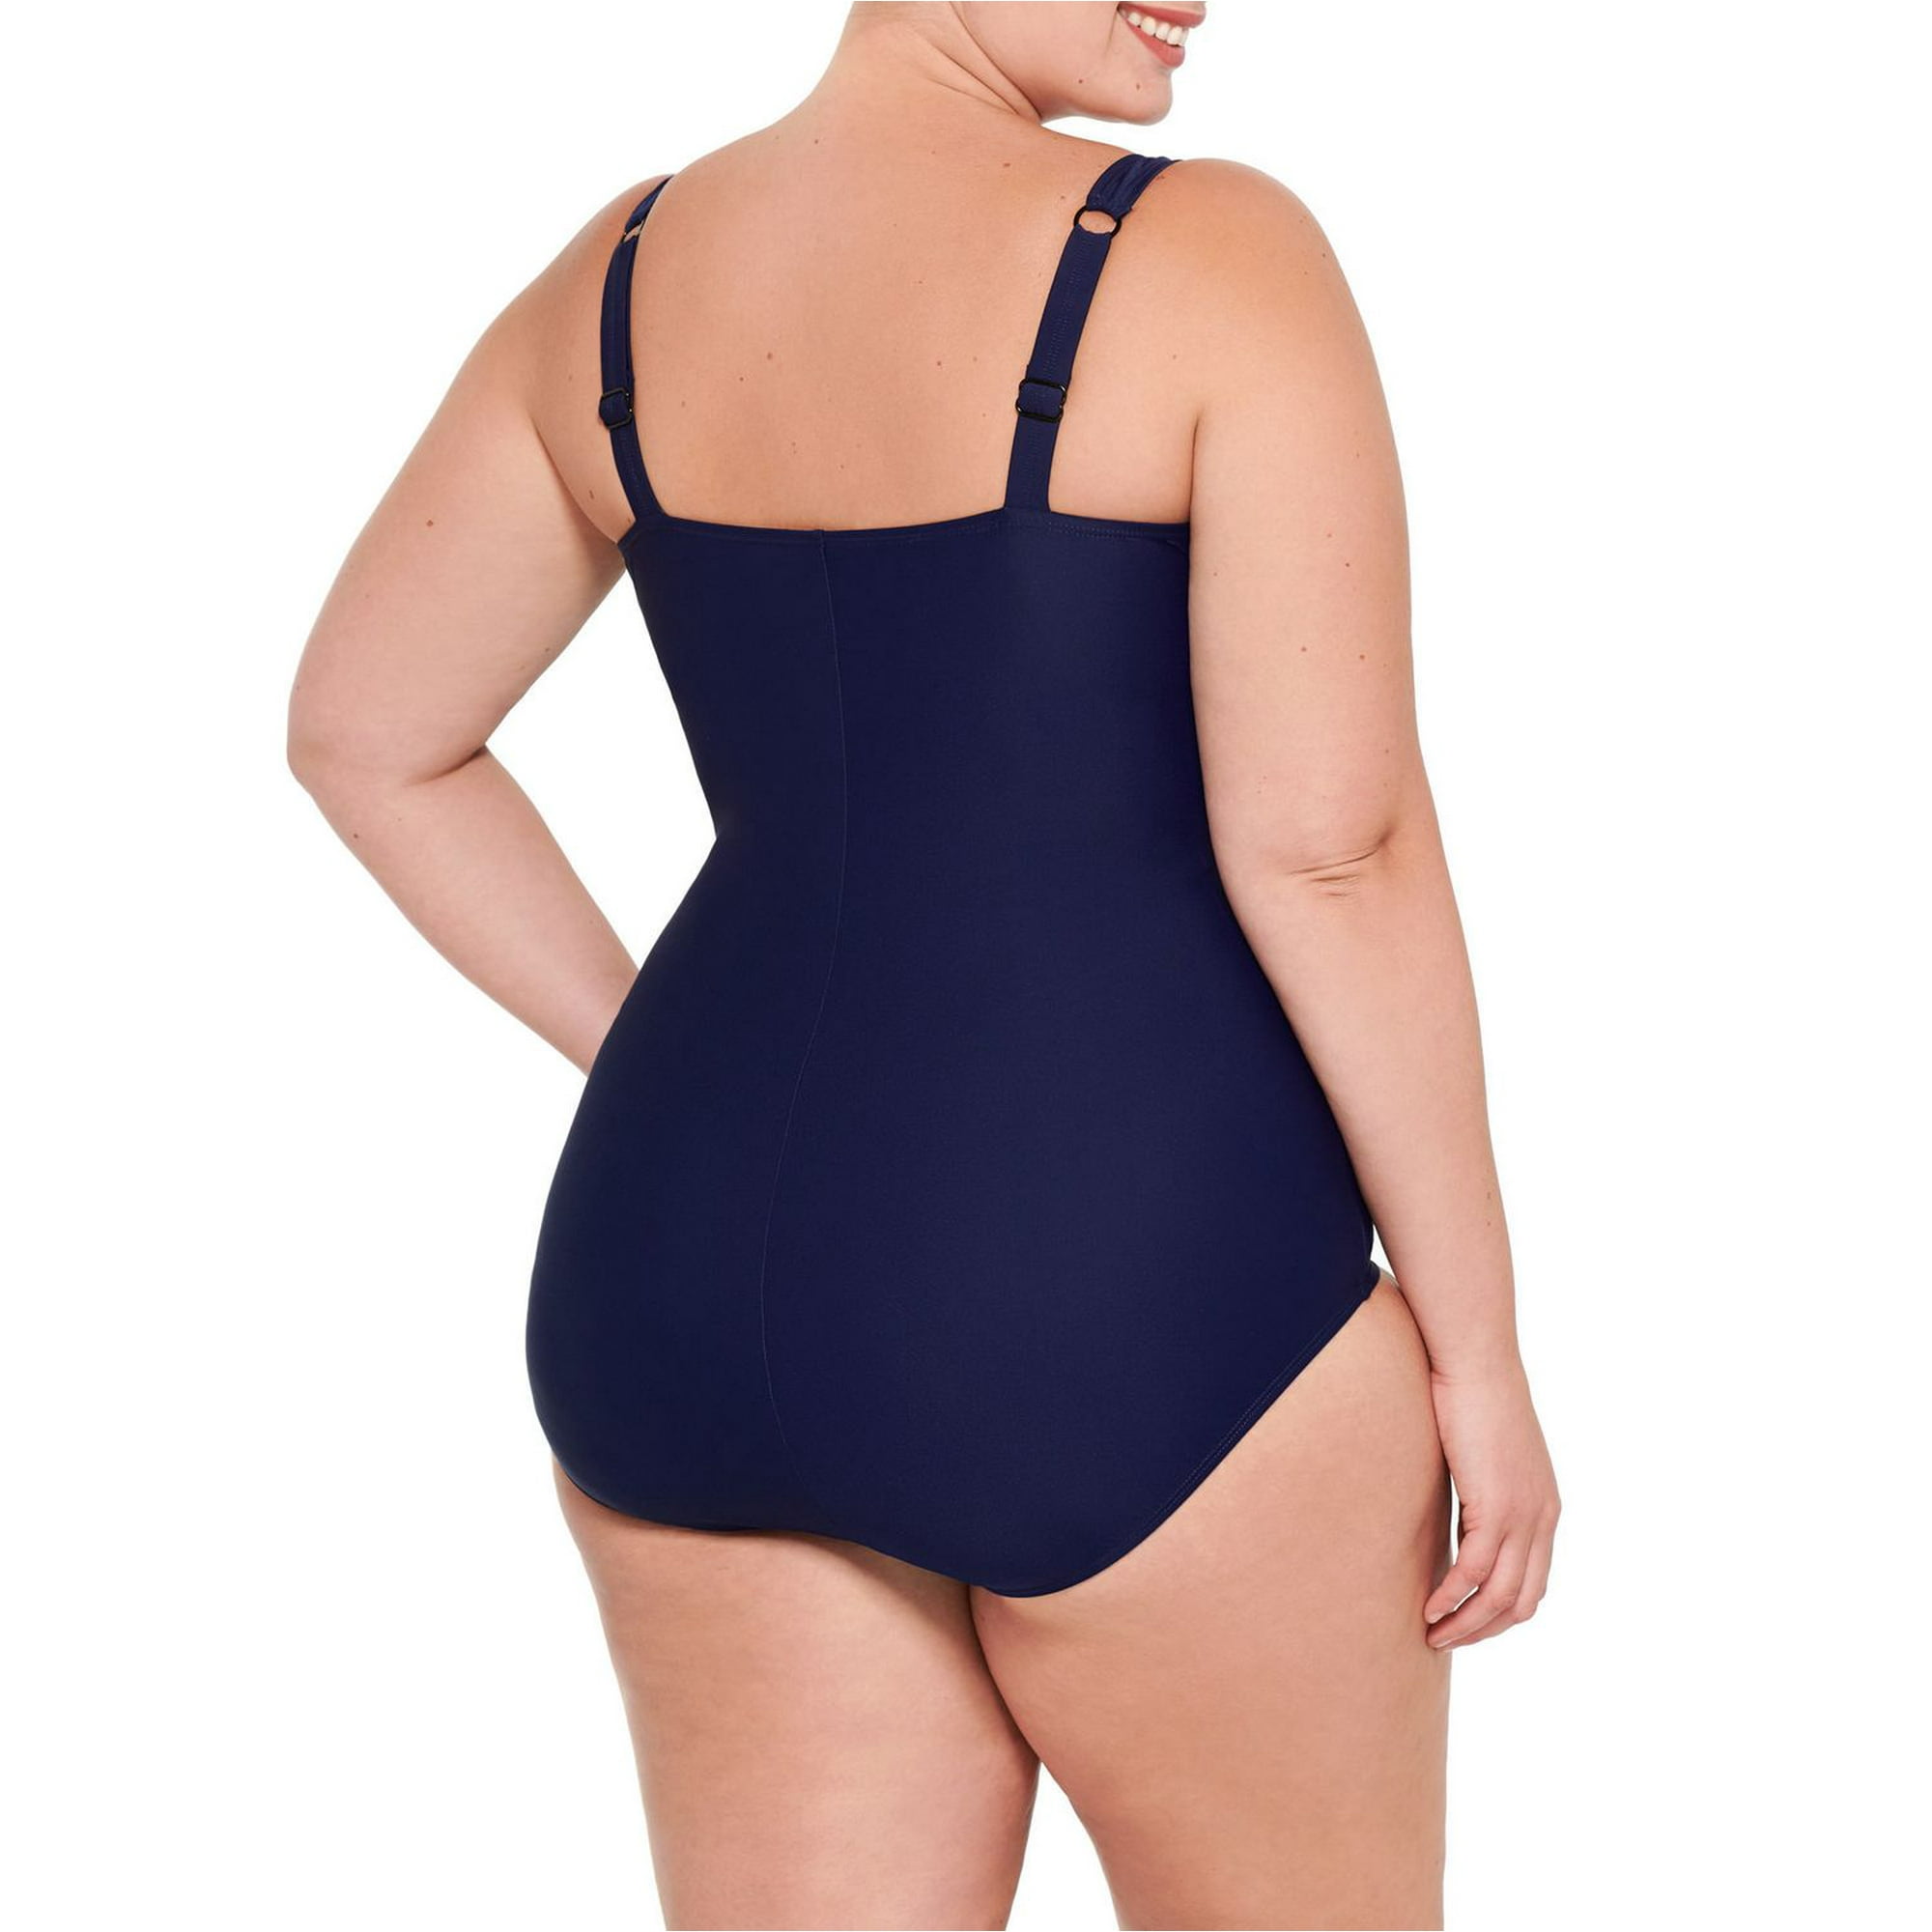  KRLAGAPAS Womens Sapphire Blue Sexy One Piece Bathing Suit  Tummy Control Swimsuit